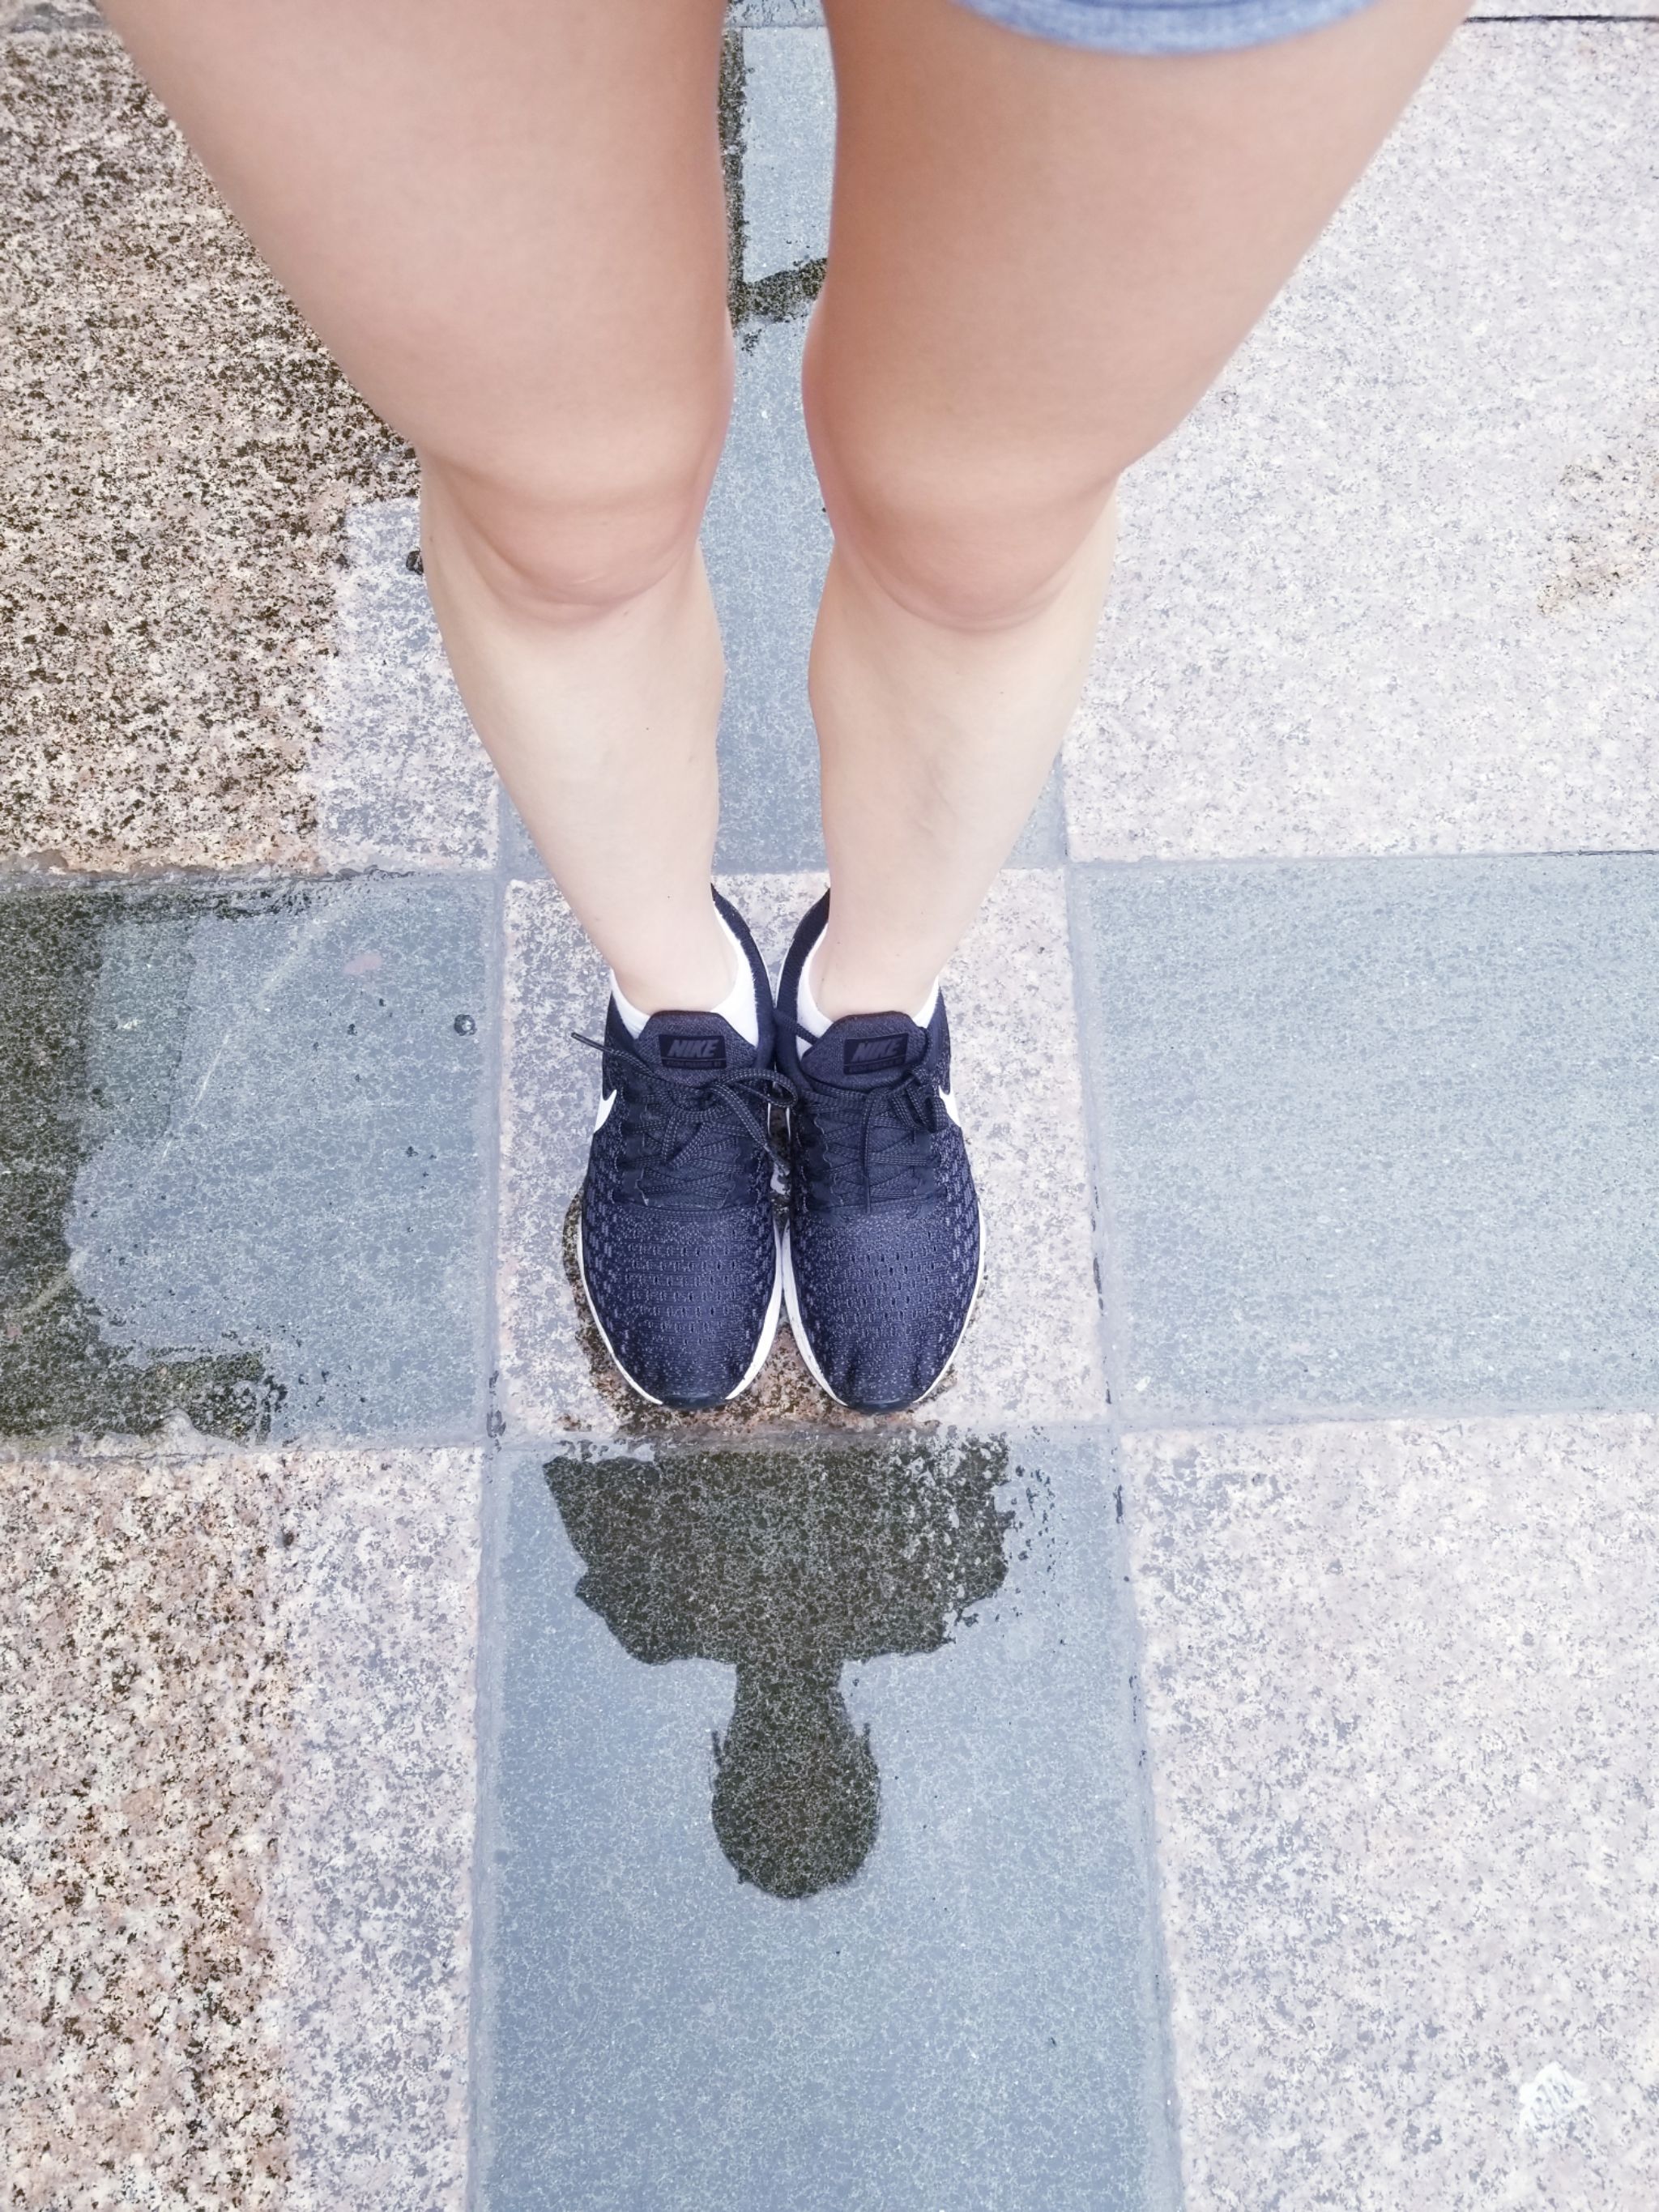 十一国庆 上海下雨 早起晨跑10·1公里 鞋子湿透 空气中都是桂花香